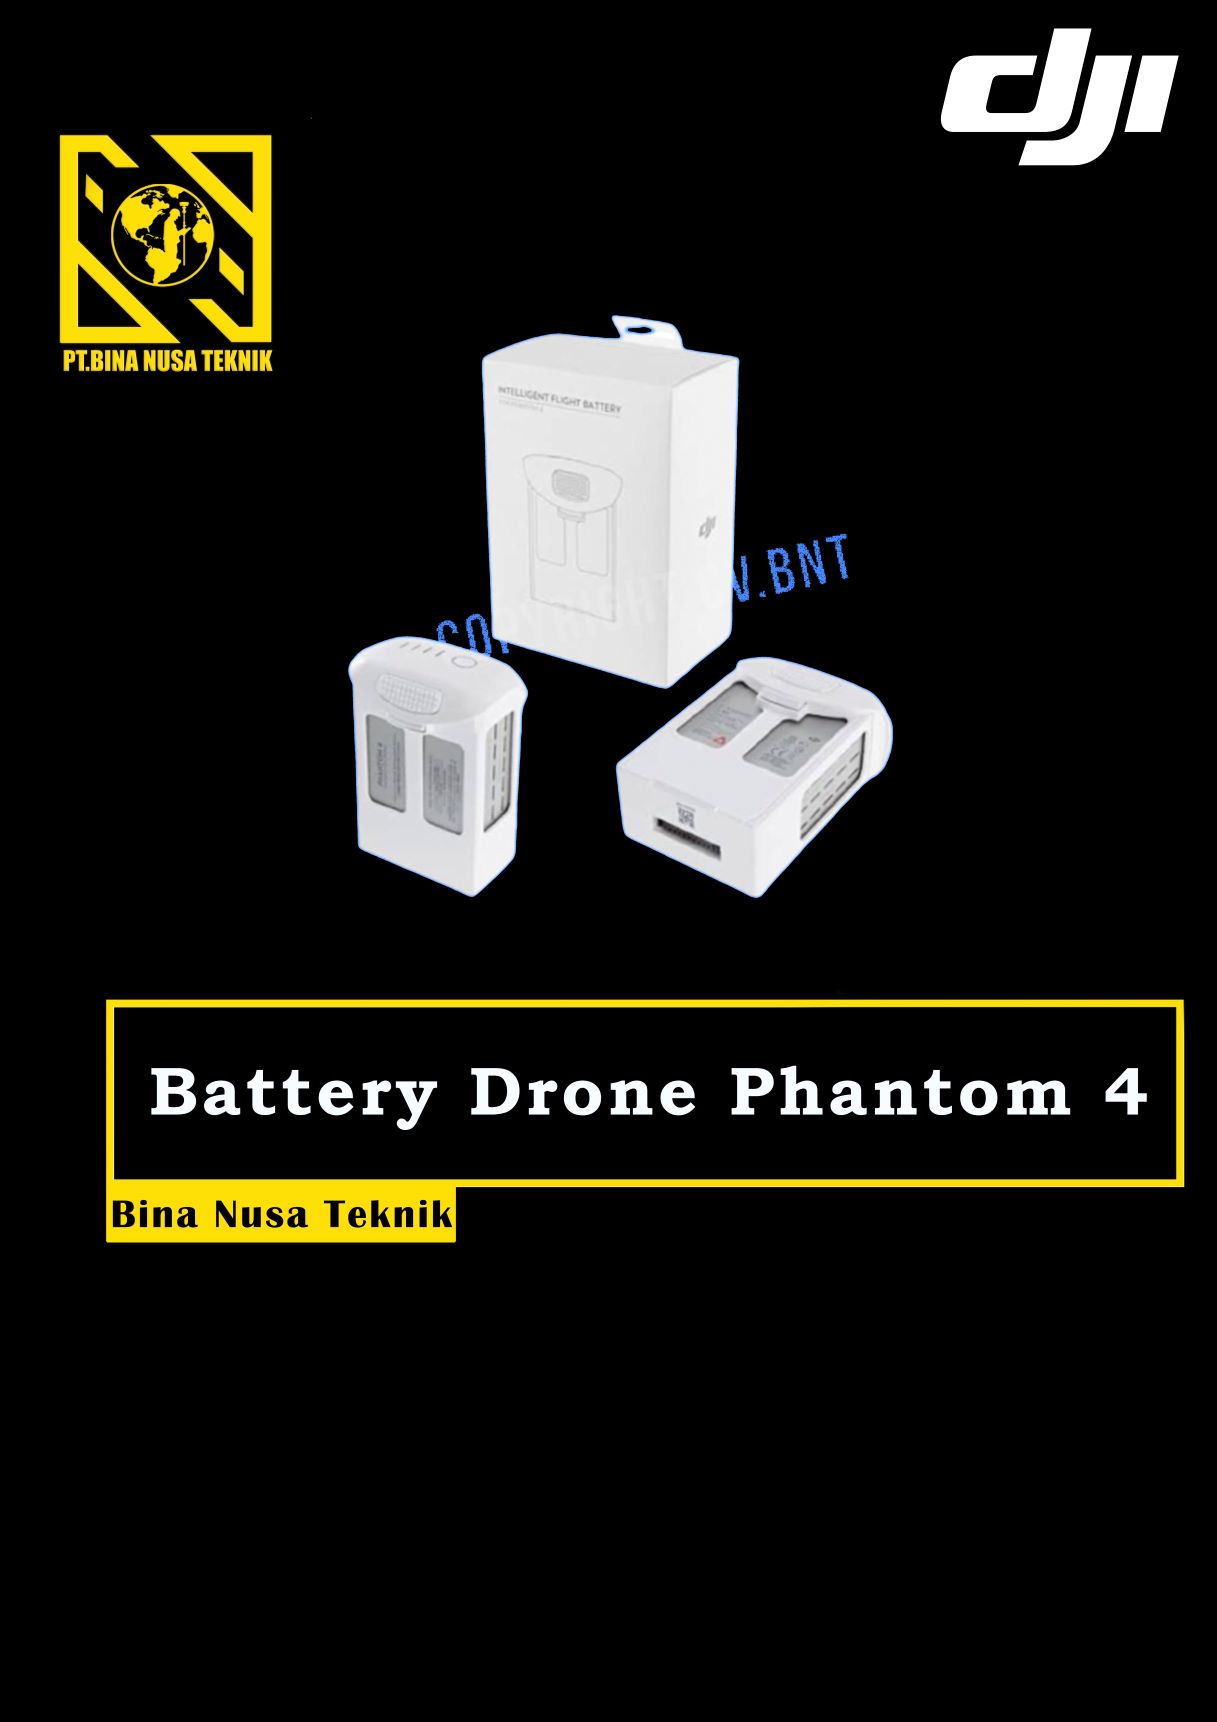 battery drone dji phantom 4